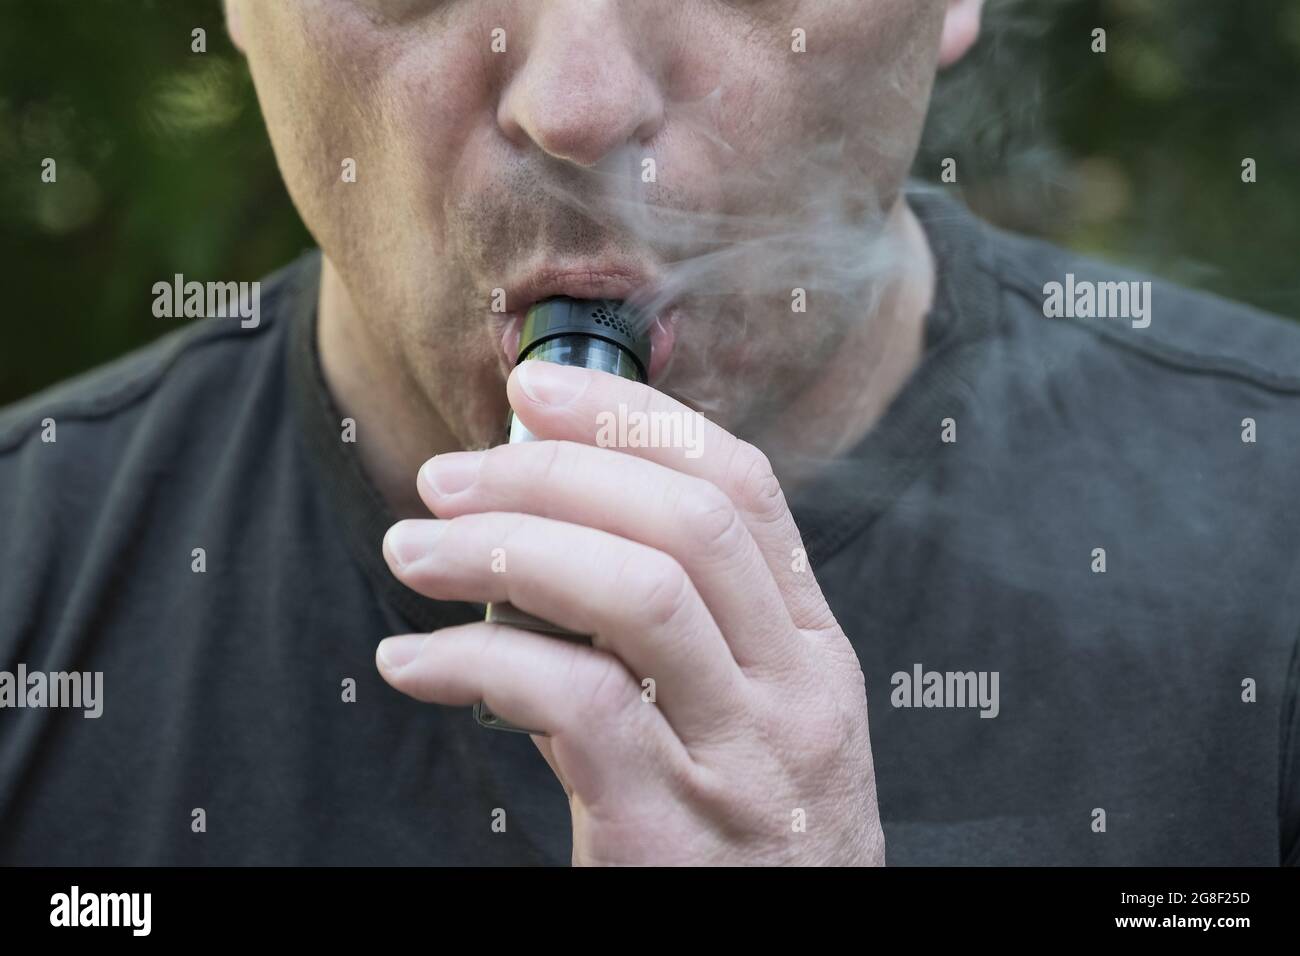 Primo piano di un uomo che fuma una sigaretta elettronica. L'uomo tiene il dispositivo di evaporazione e inala il fumo. Vaporizzare un liquido per inalare Foto Stock